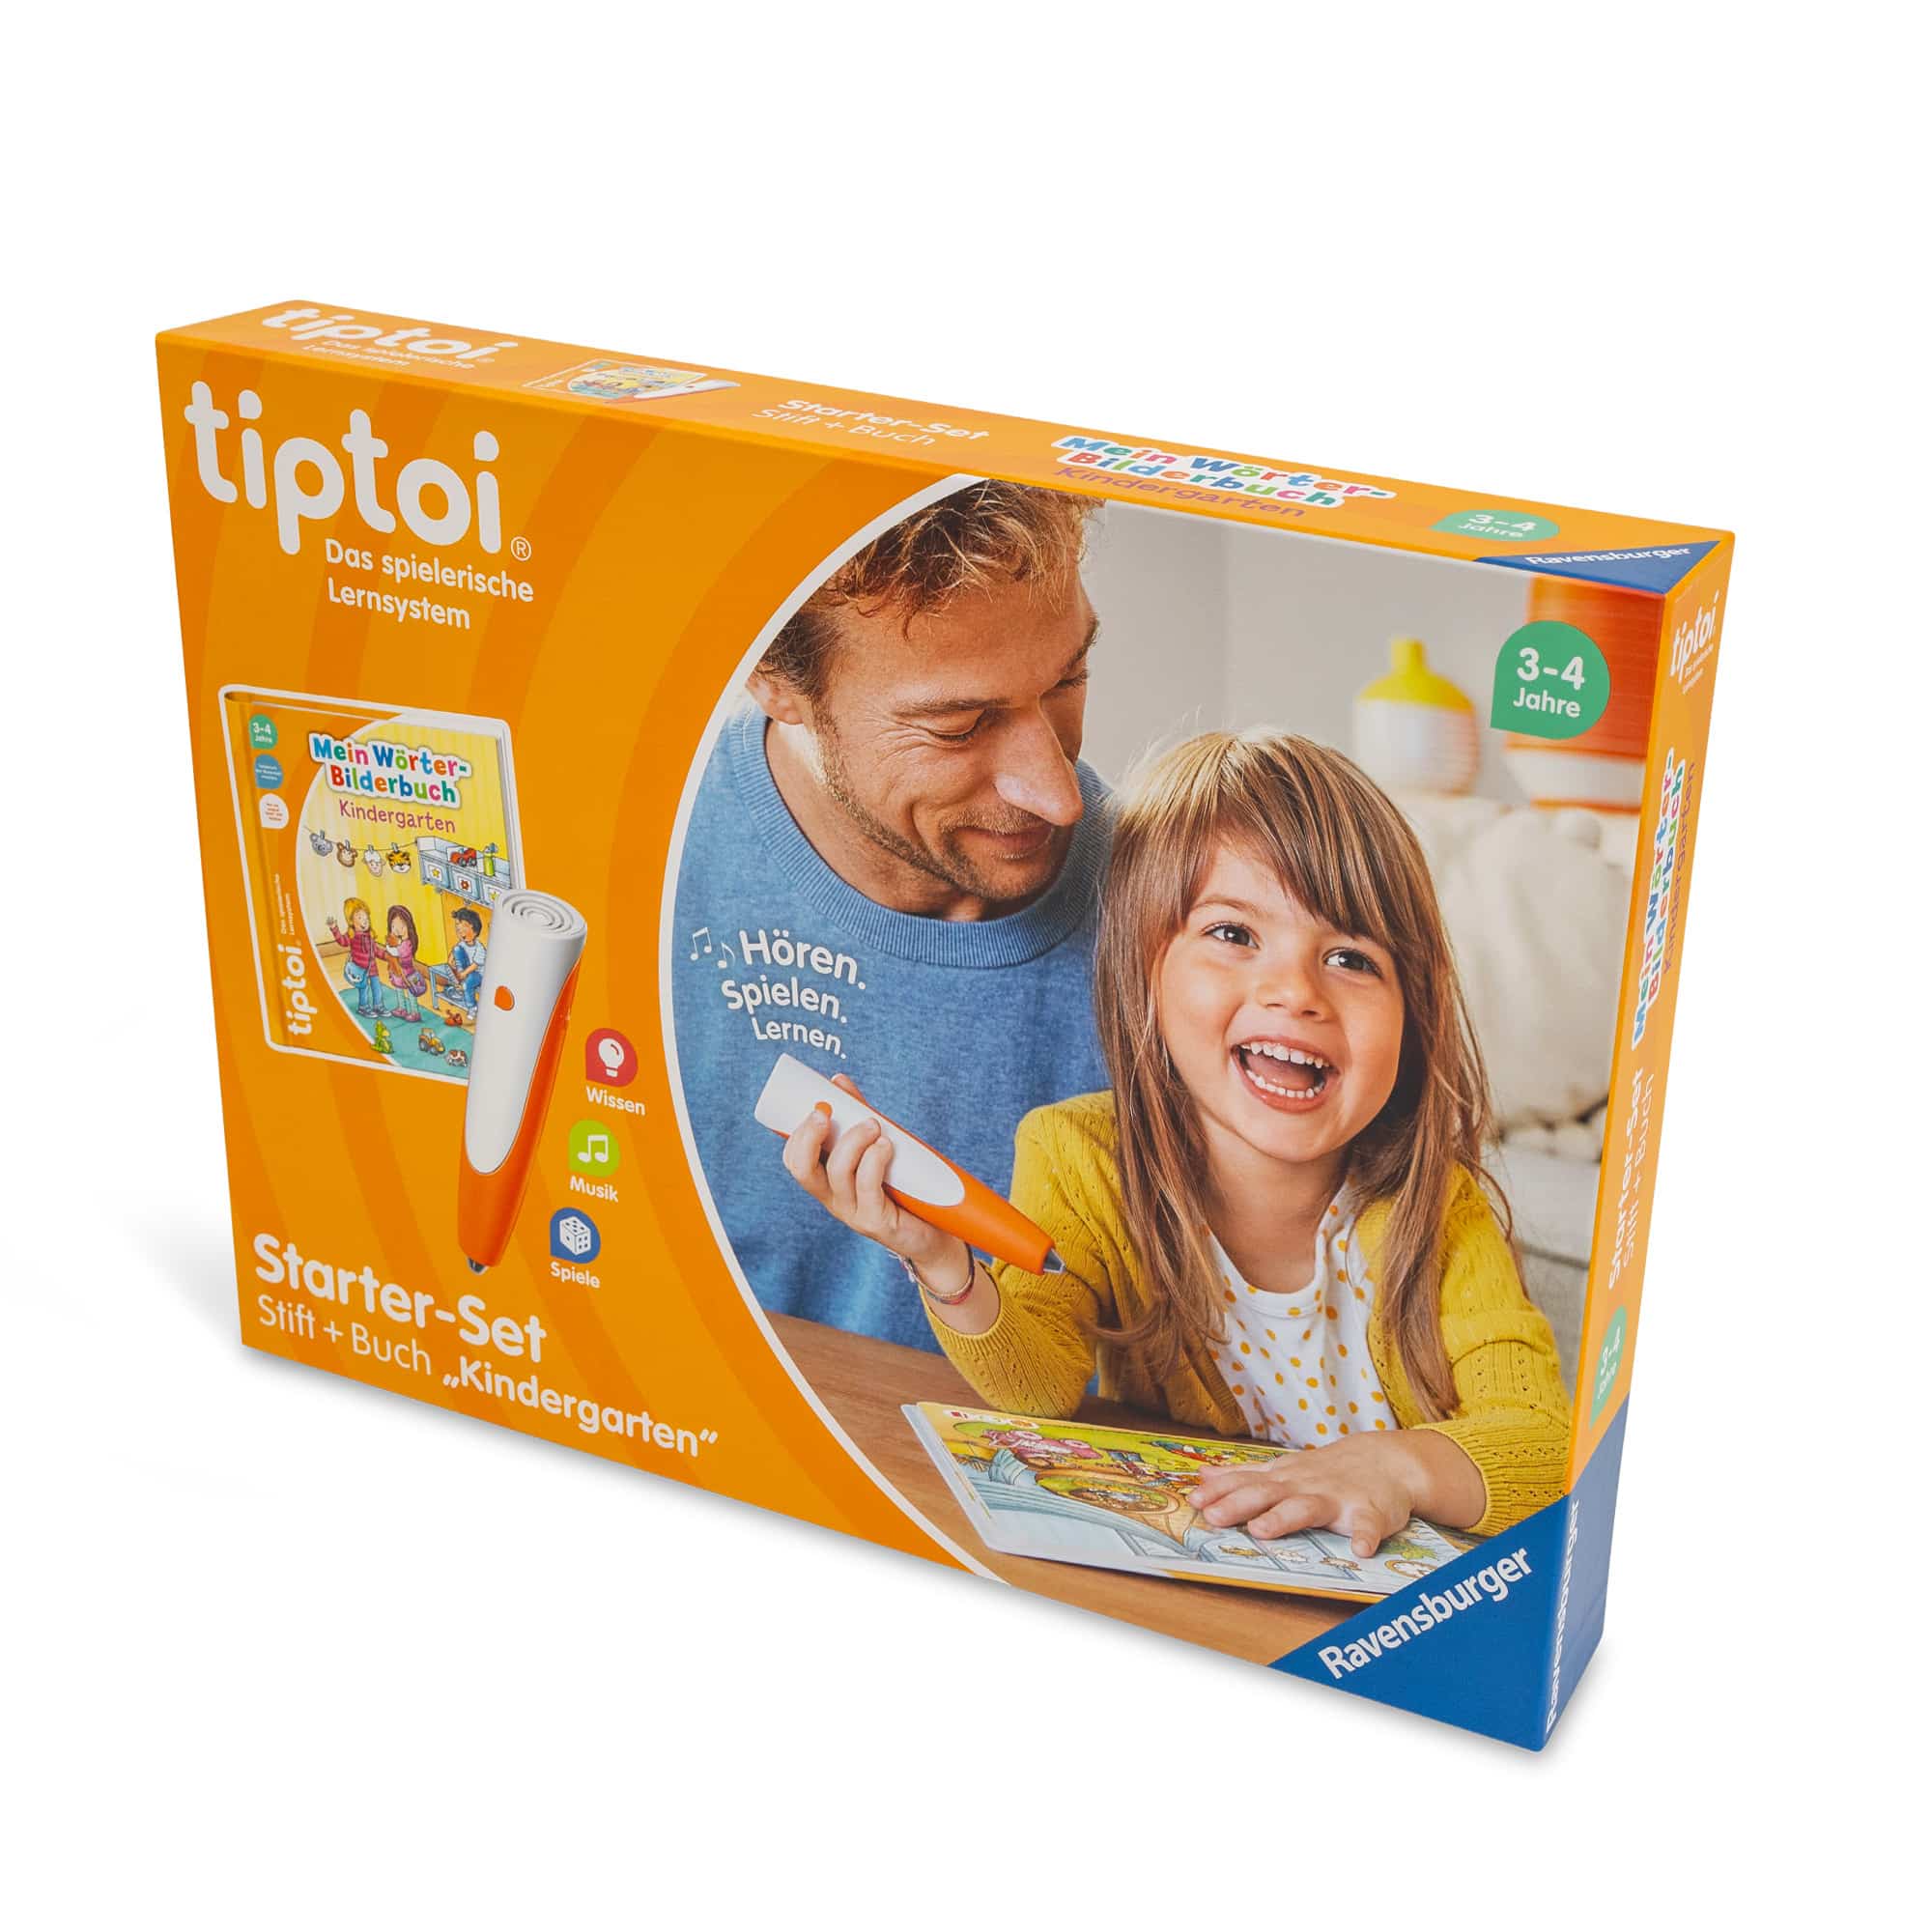 tiptoi® Starter-Set: Stift + Buch Kindergarten Ravensburger Orange 2000582961100 1